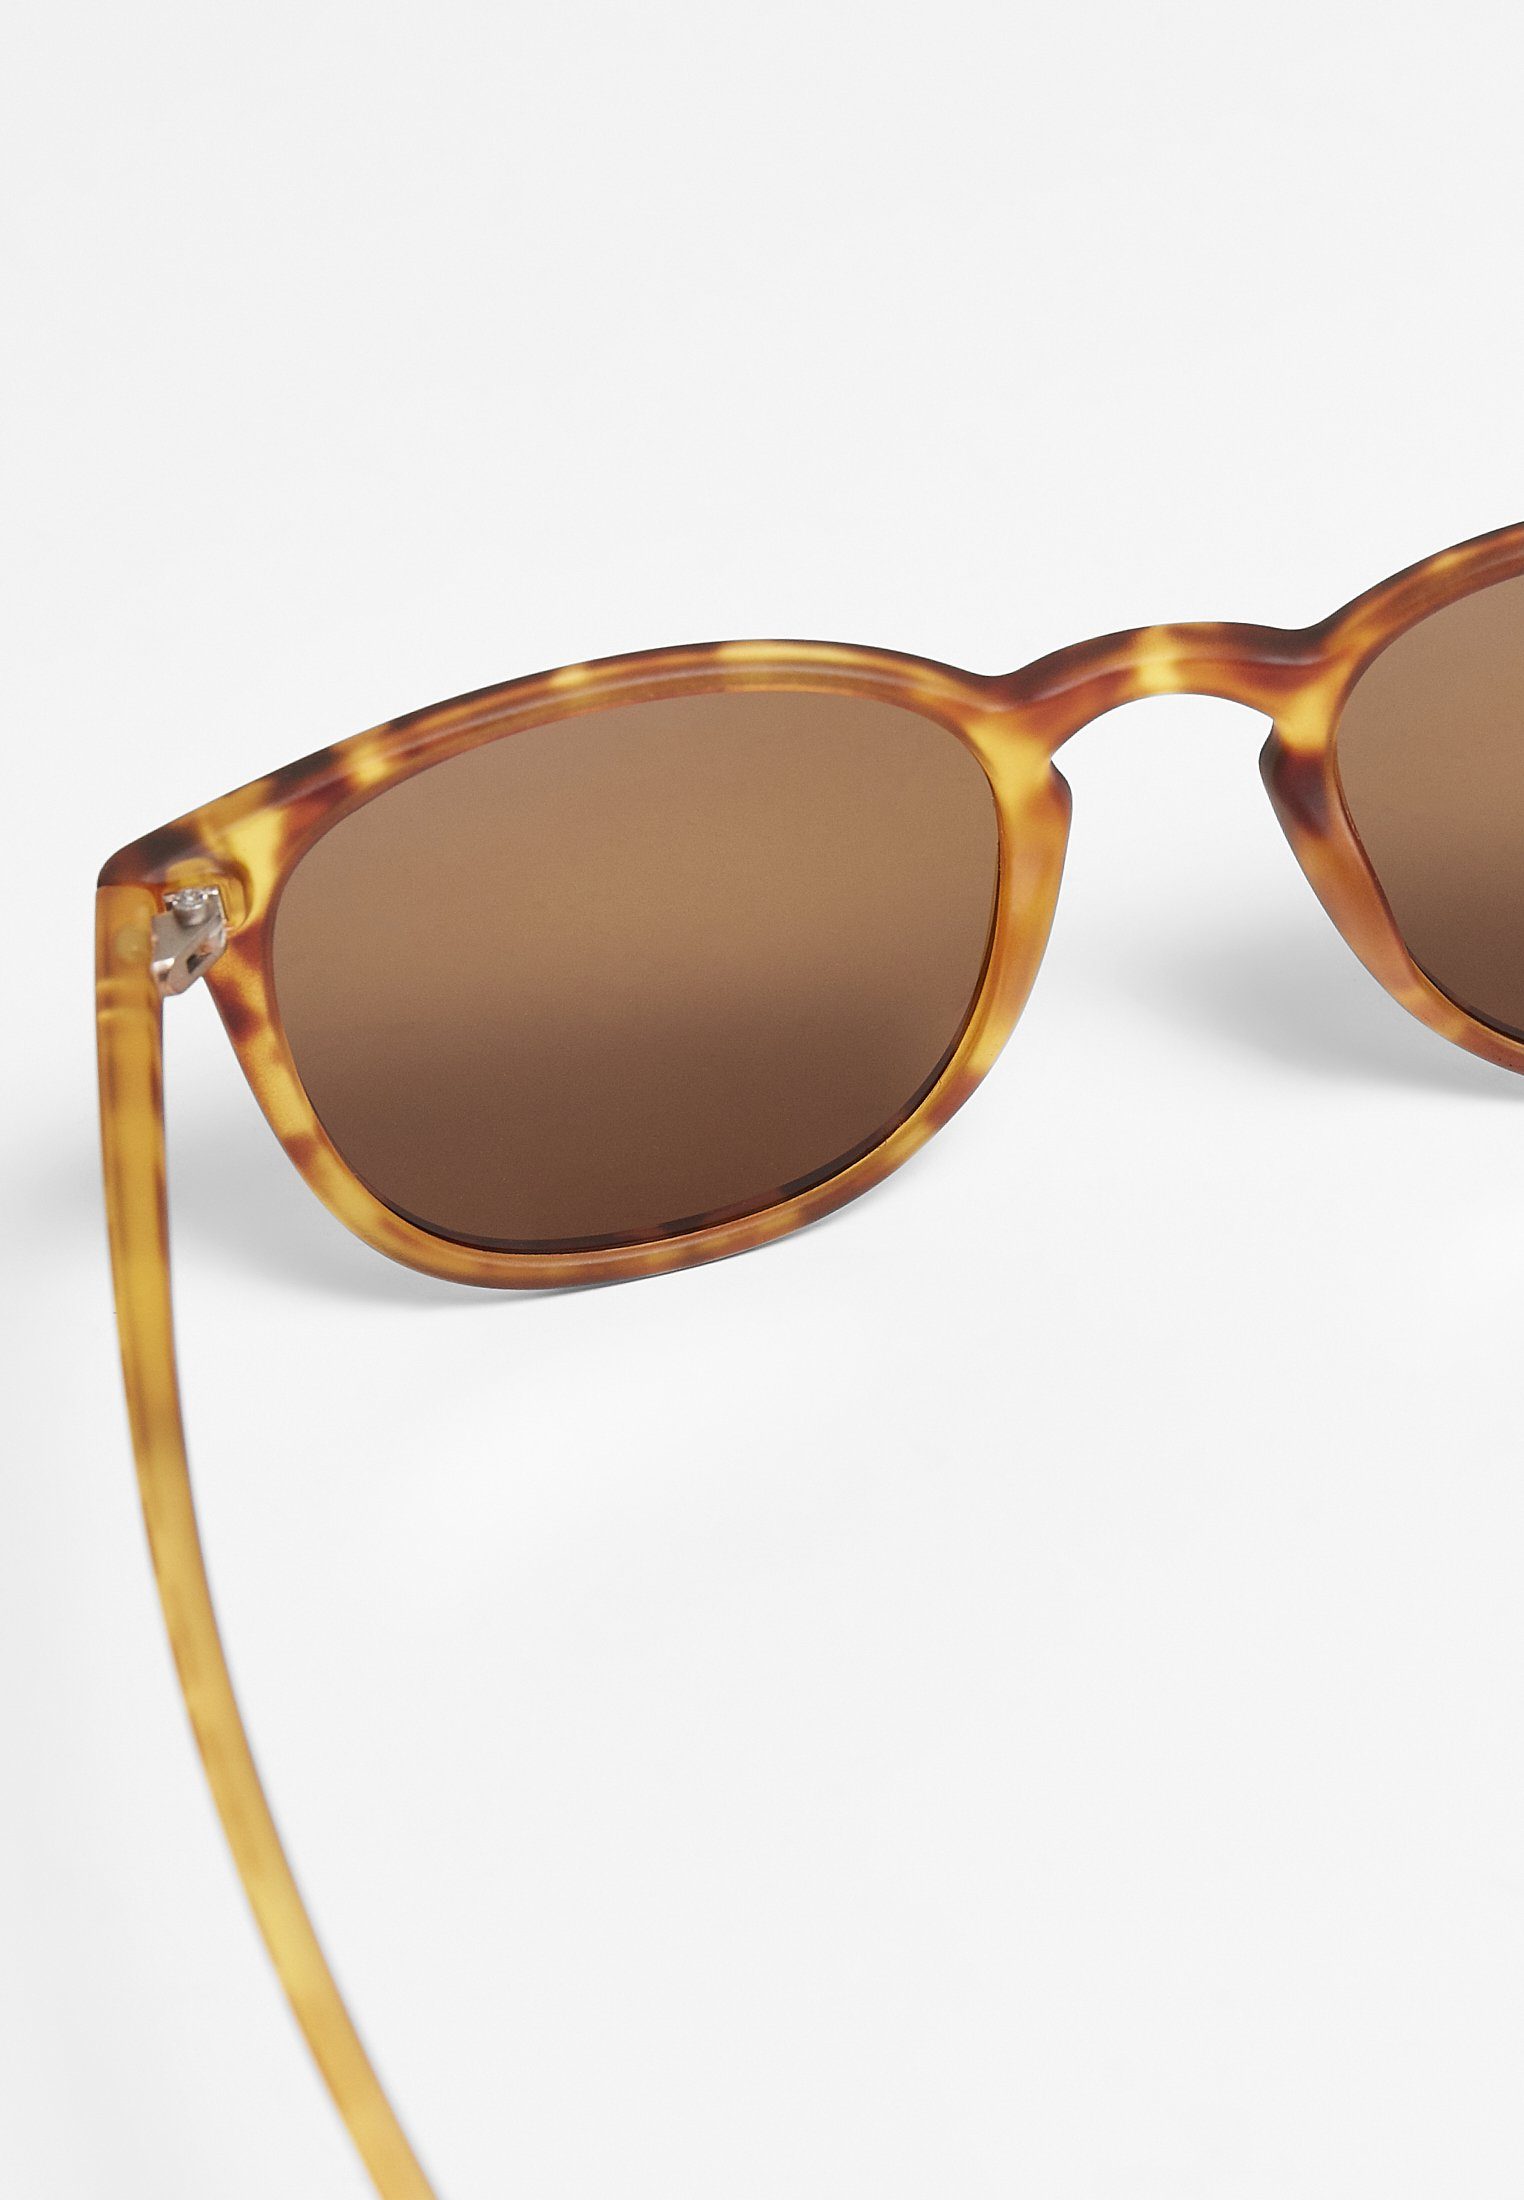 URBAN CLASSICS Sonnenbrille Accessoires Sunglasses UC brown leo/rosé Arthur